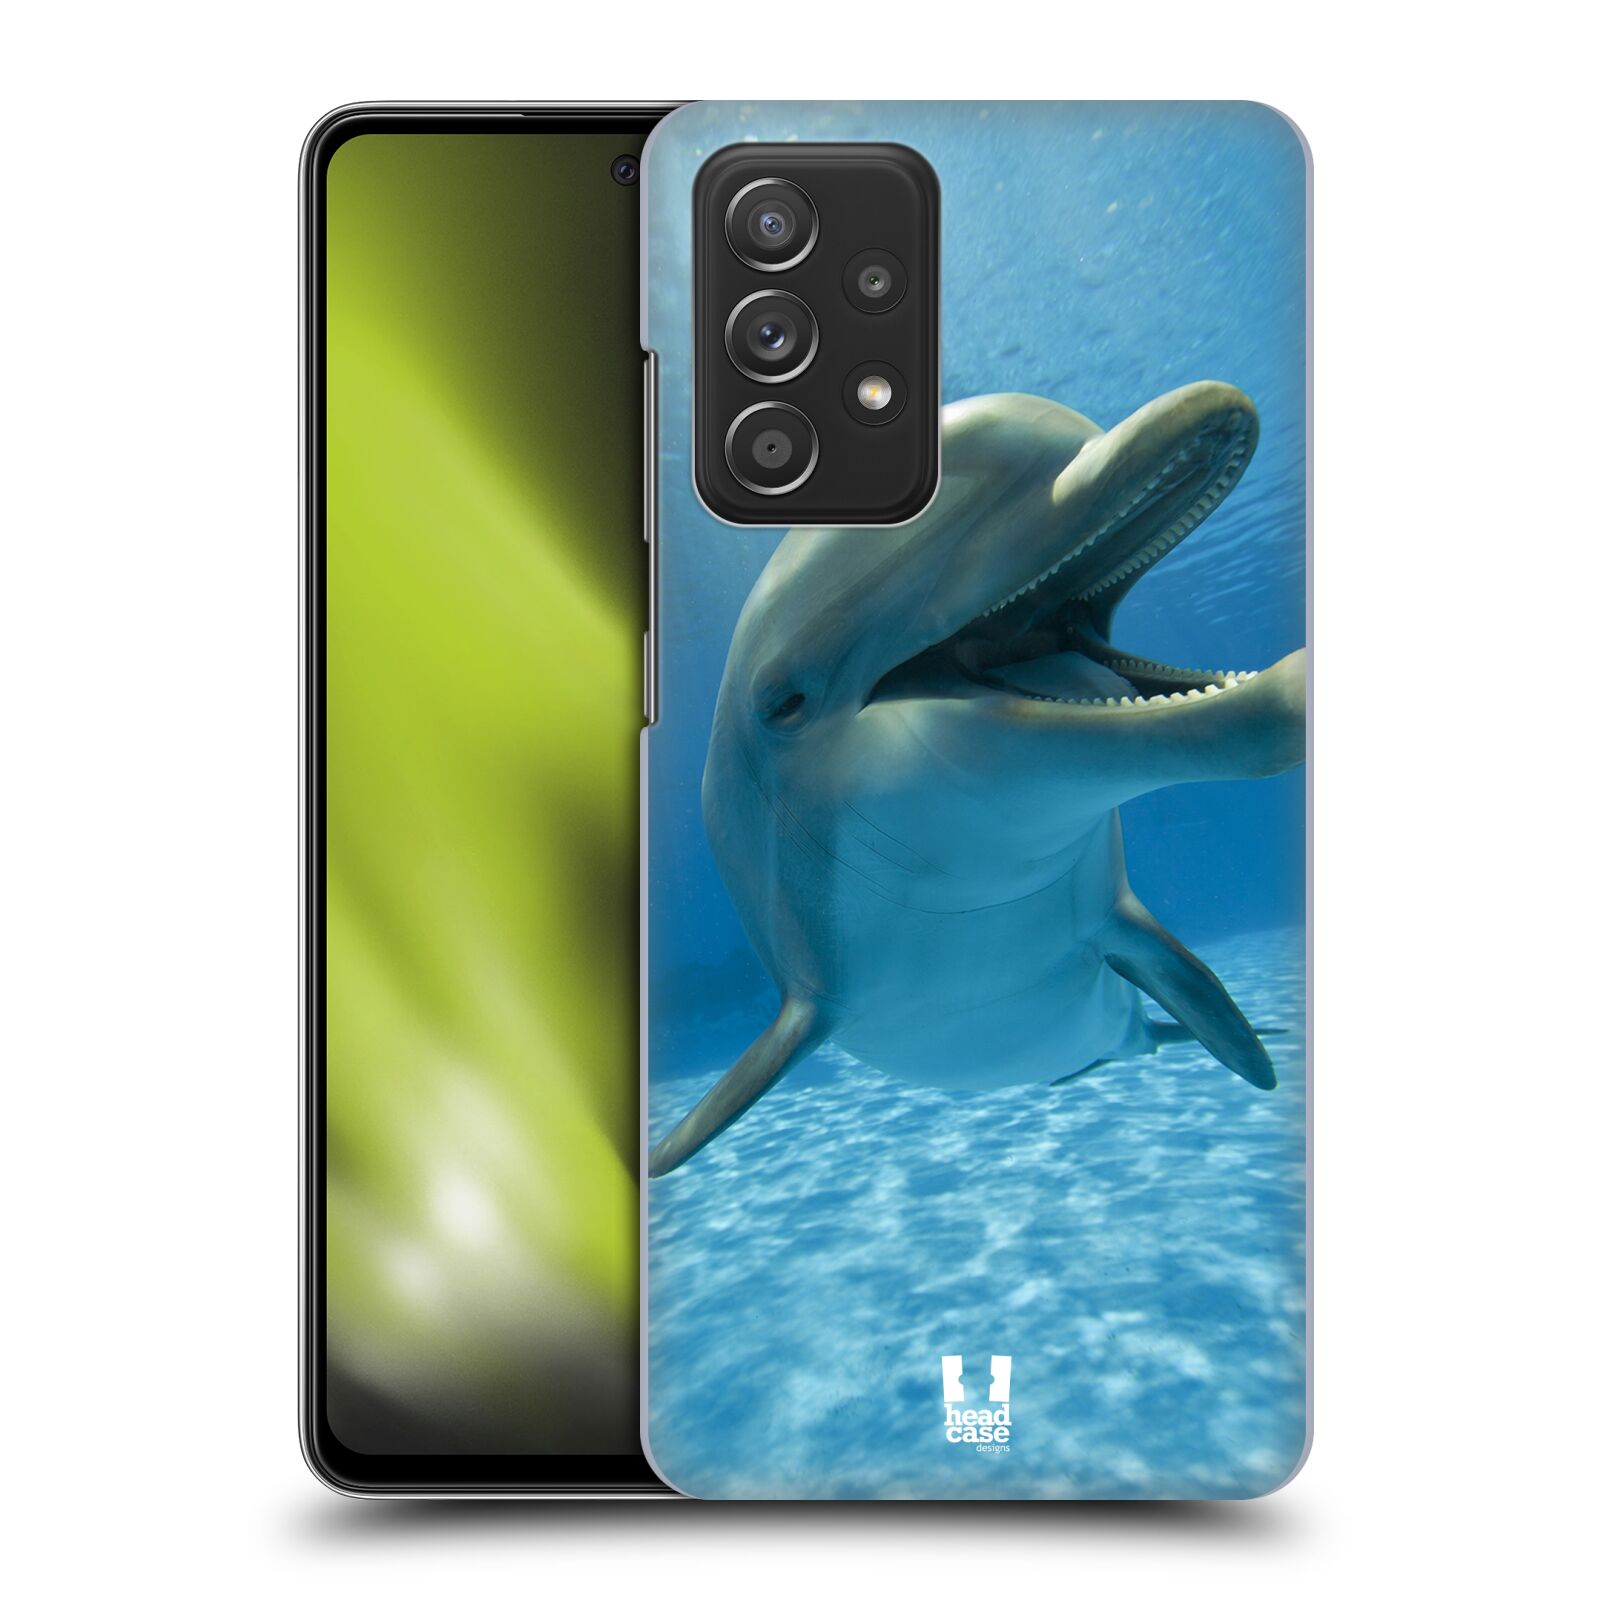 Zadní obal pro mobil Samsung Galaxy A52 / A52s / A52 5G - HEAD CASE - Svět zvířat delfín v moři